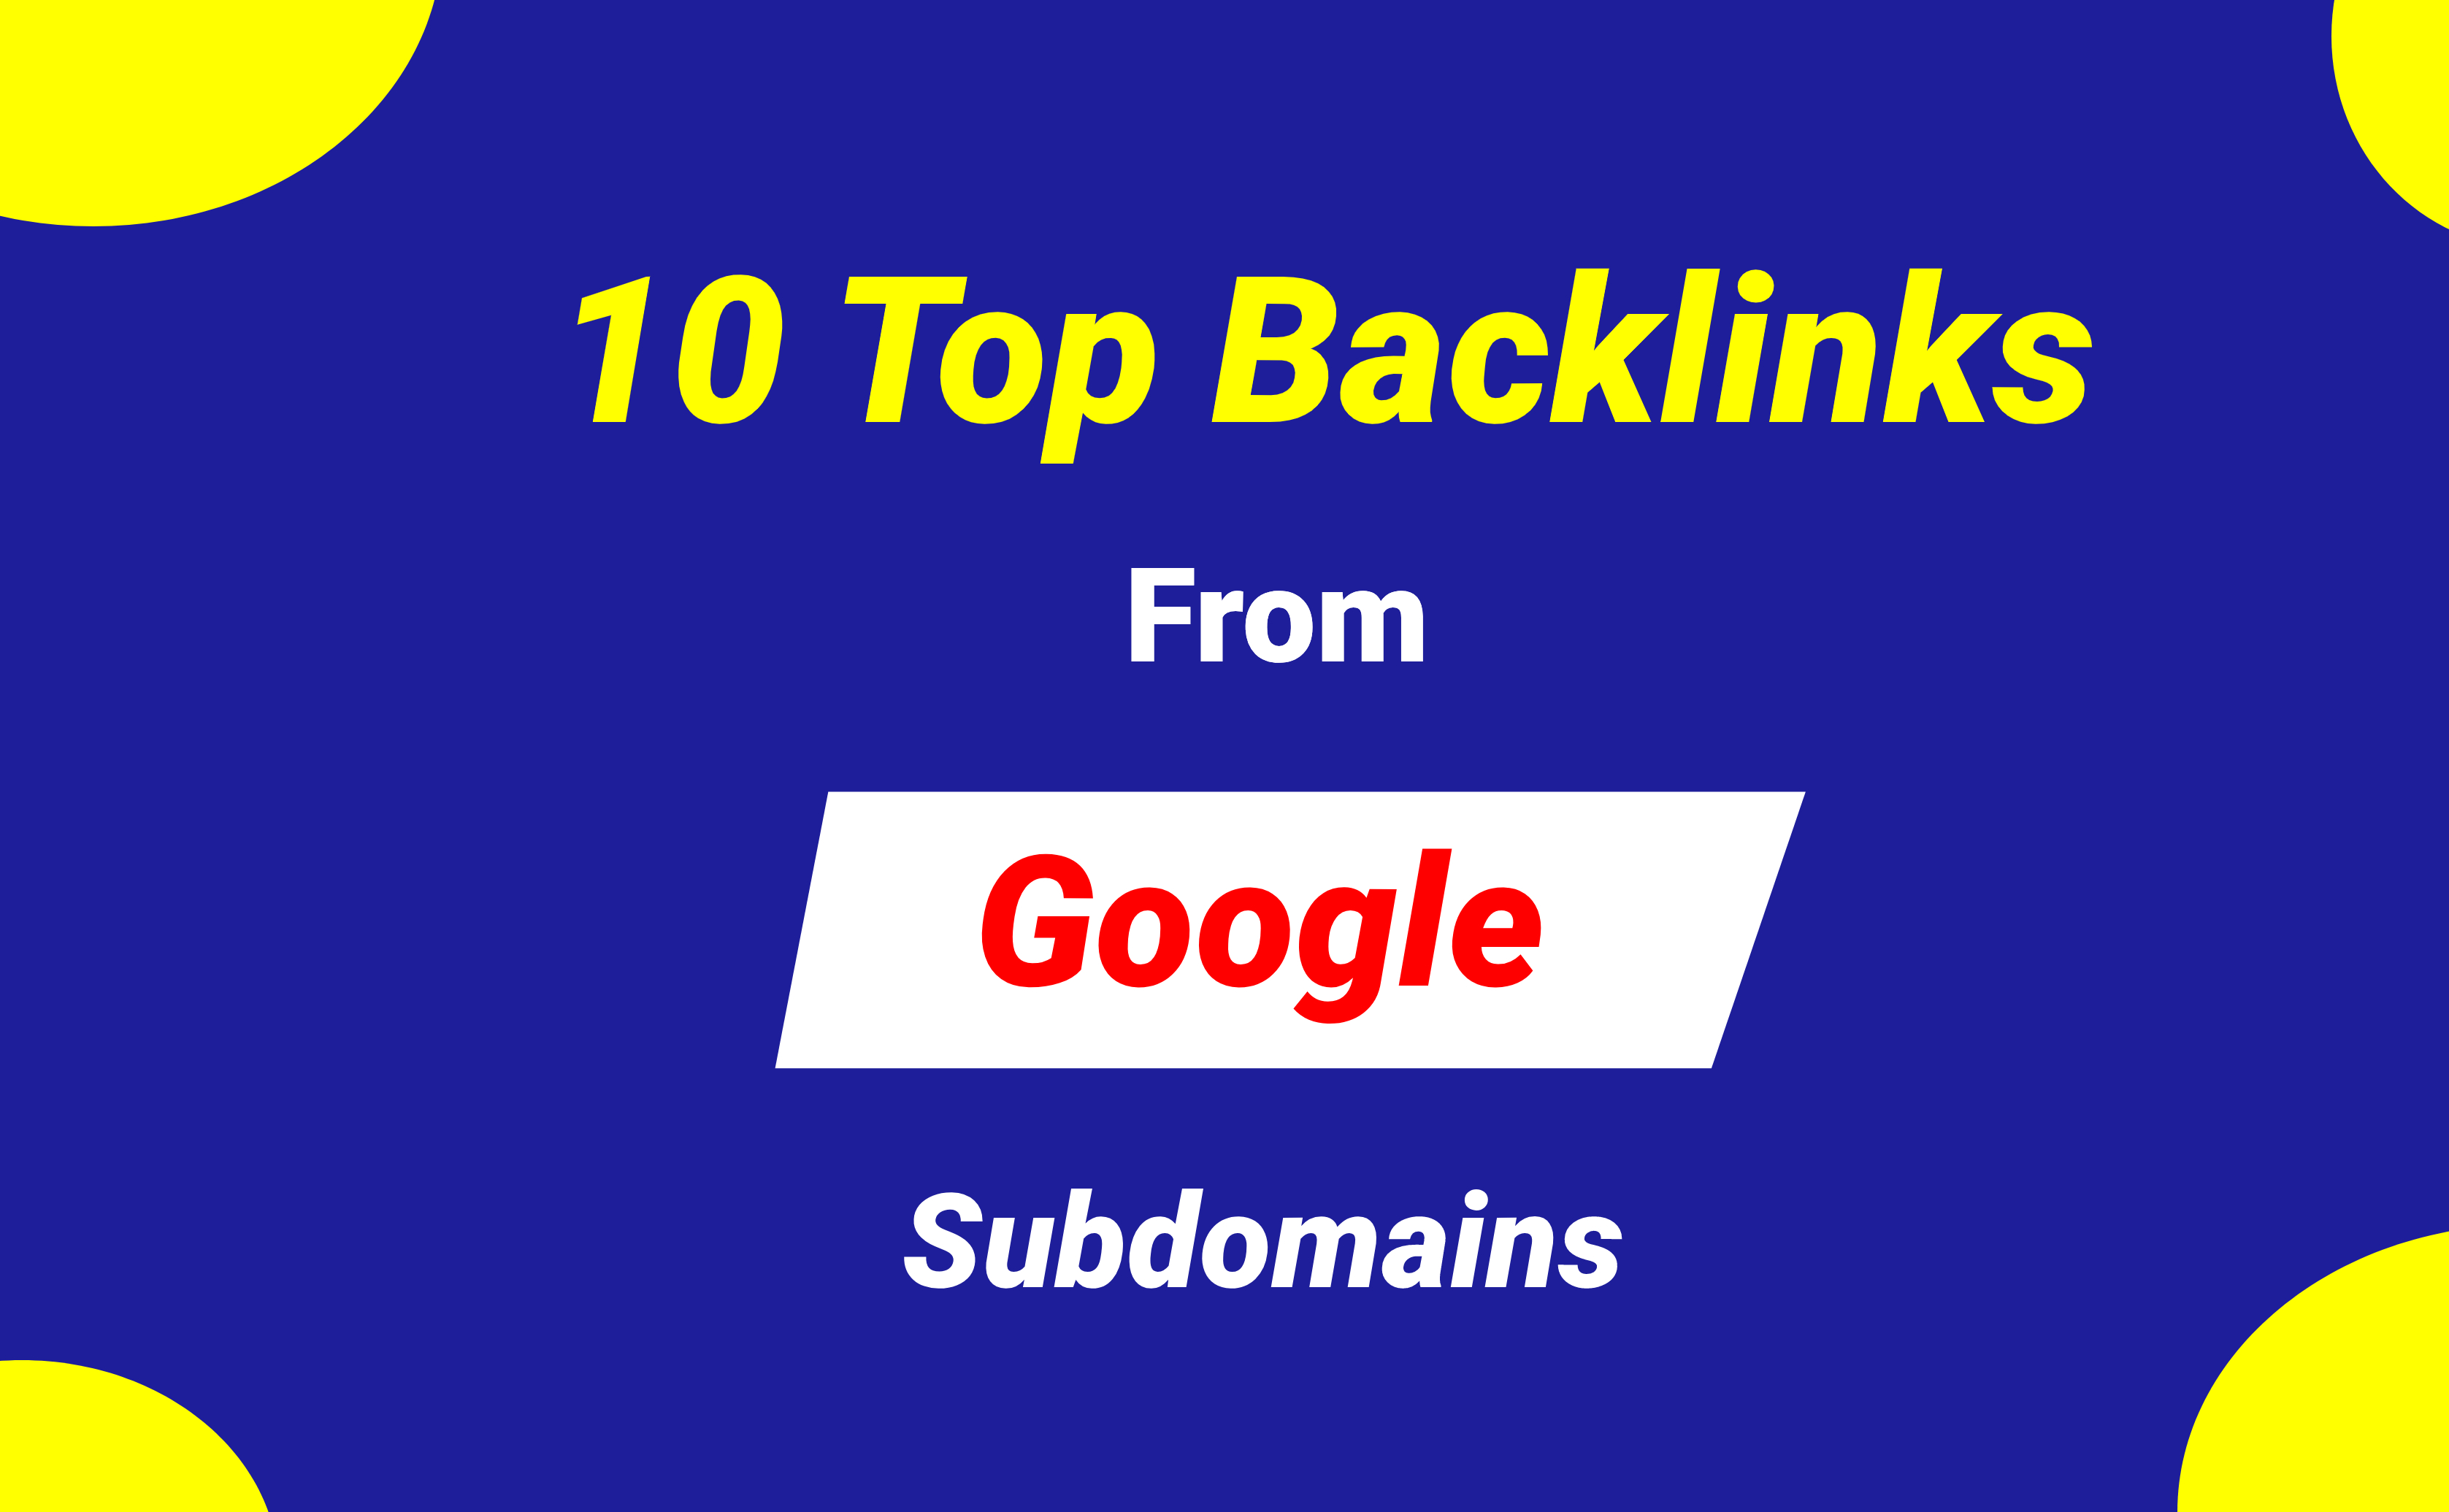 10 Top Backlinks DA 90+ From Google Subdomain - Alpha Booster